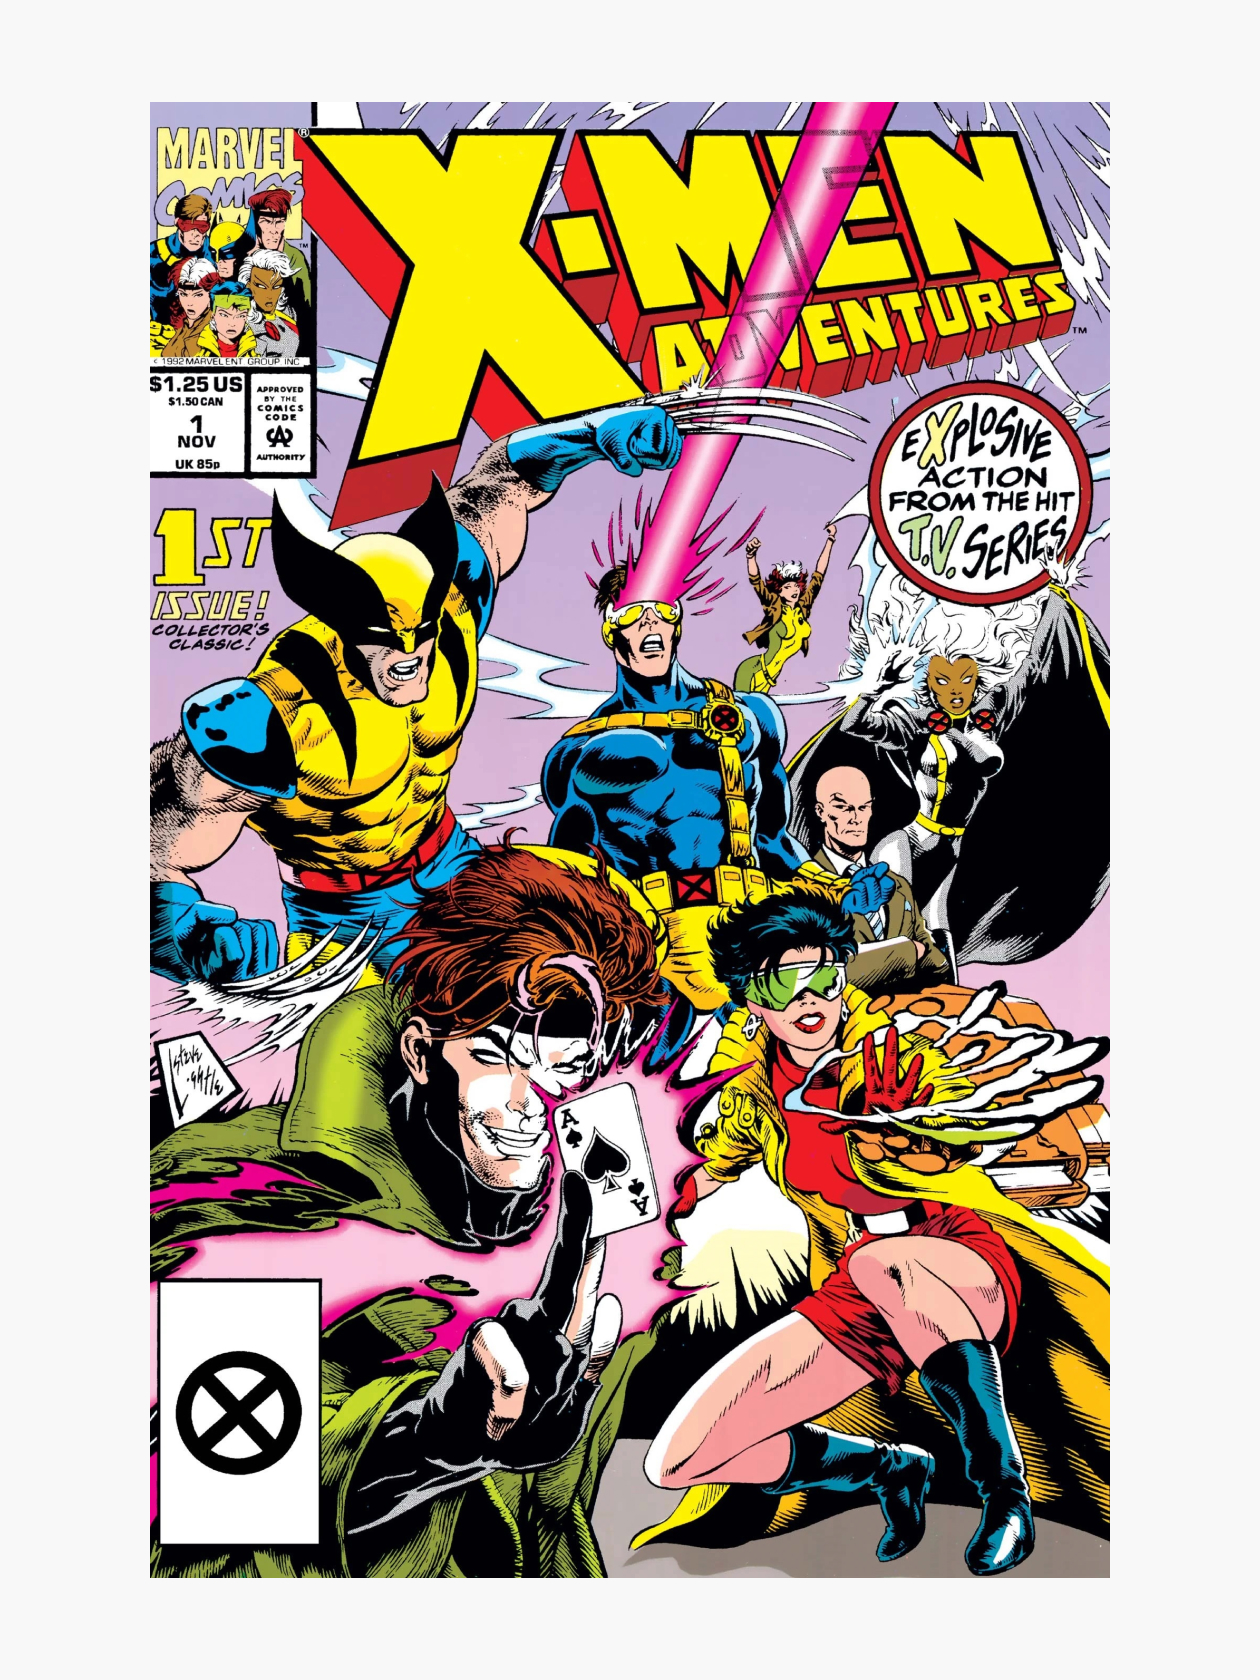 Комикс издавался до 1997 года и закончился вскоре после финала мультсериала. Источник: Marvel Comics